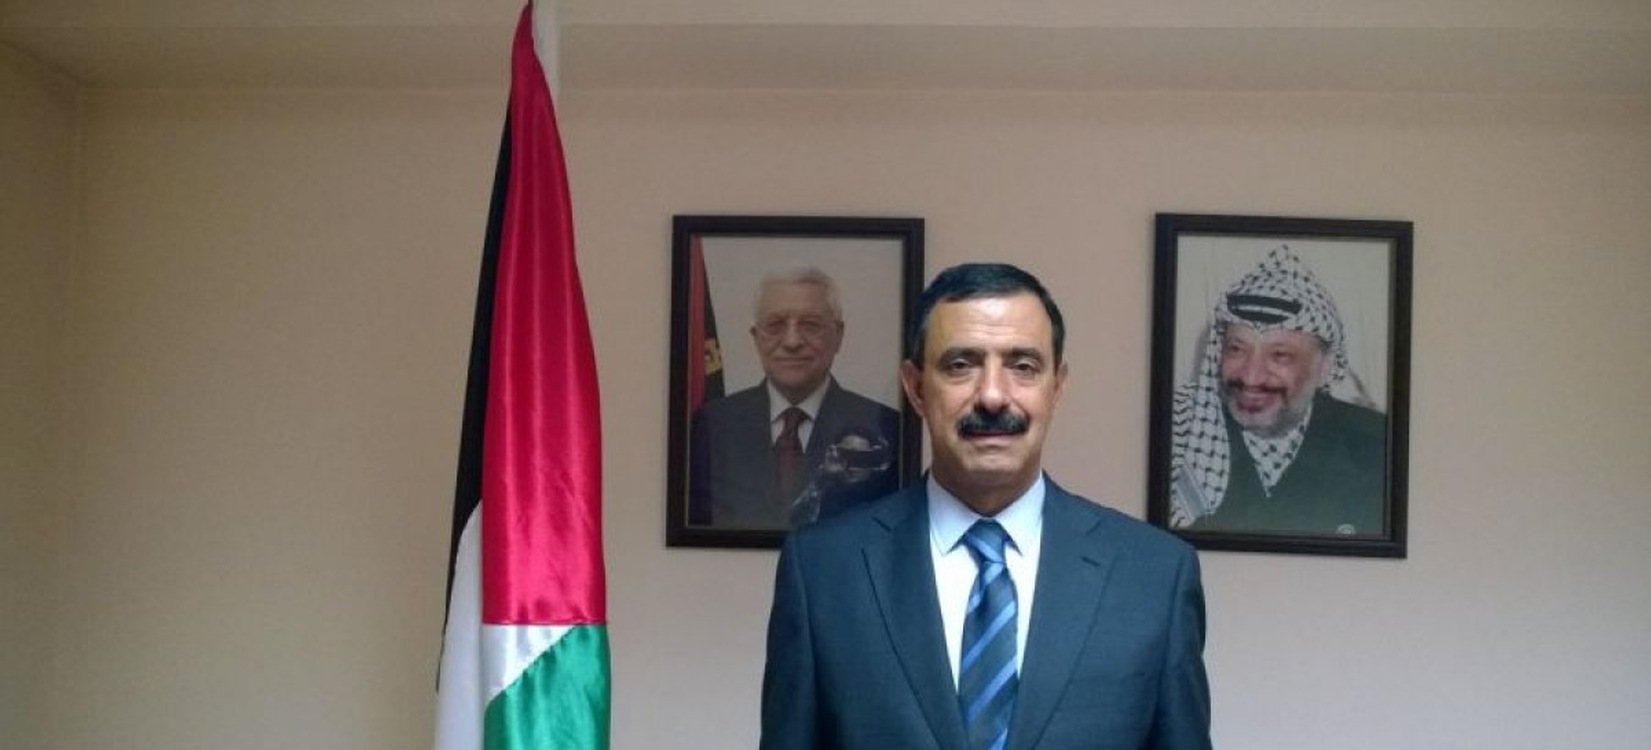 Ambasadorul Palestinei în România a fost rechemat la Ramallah pentru consultări